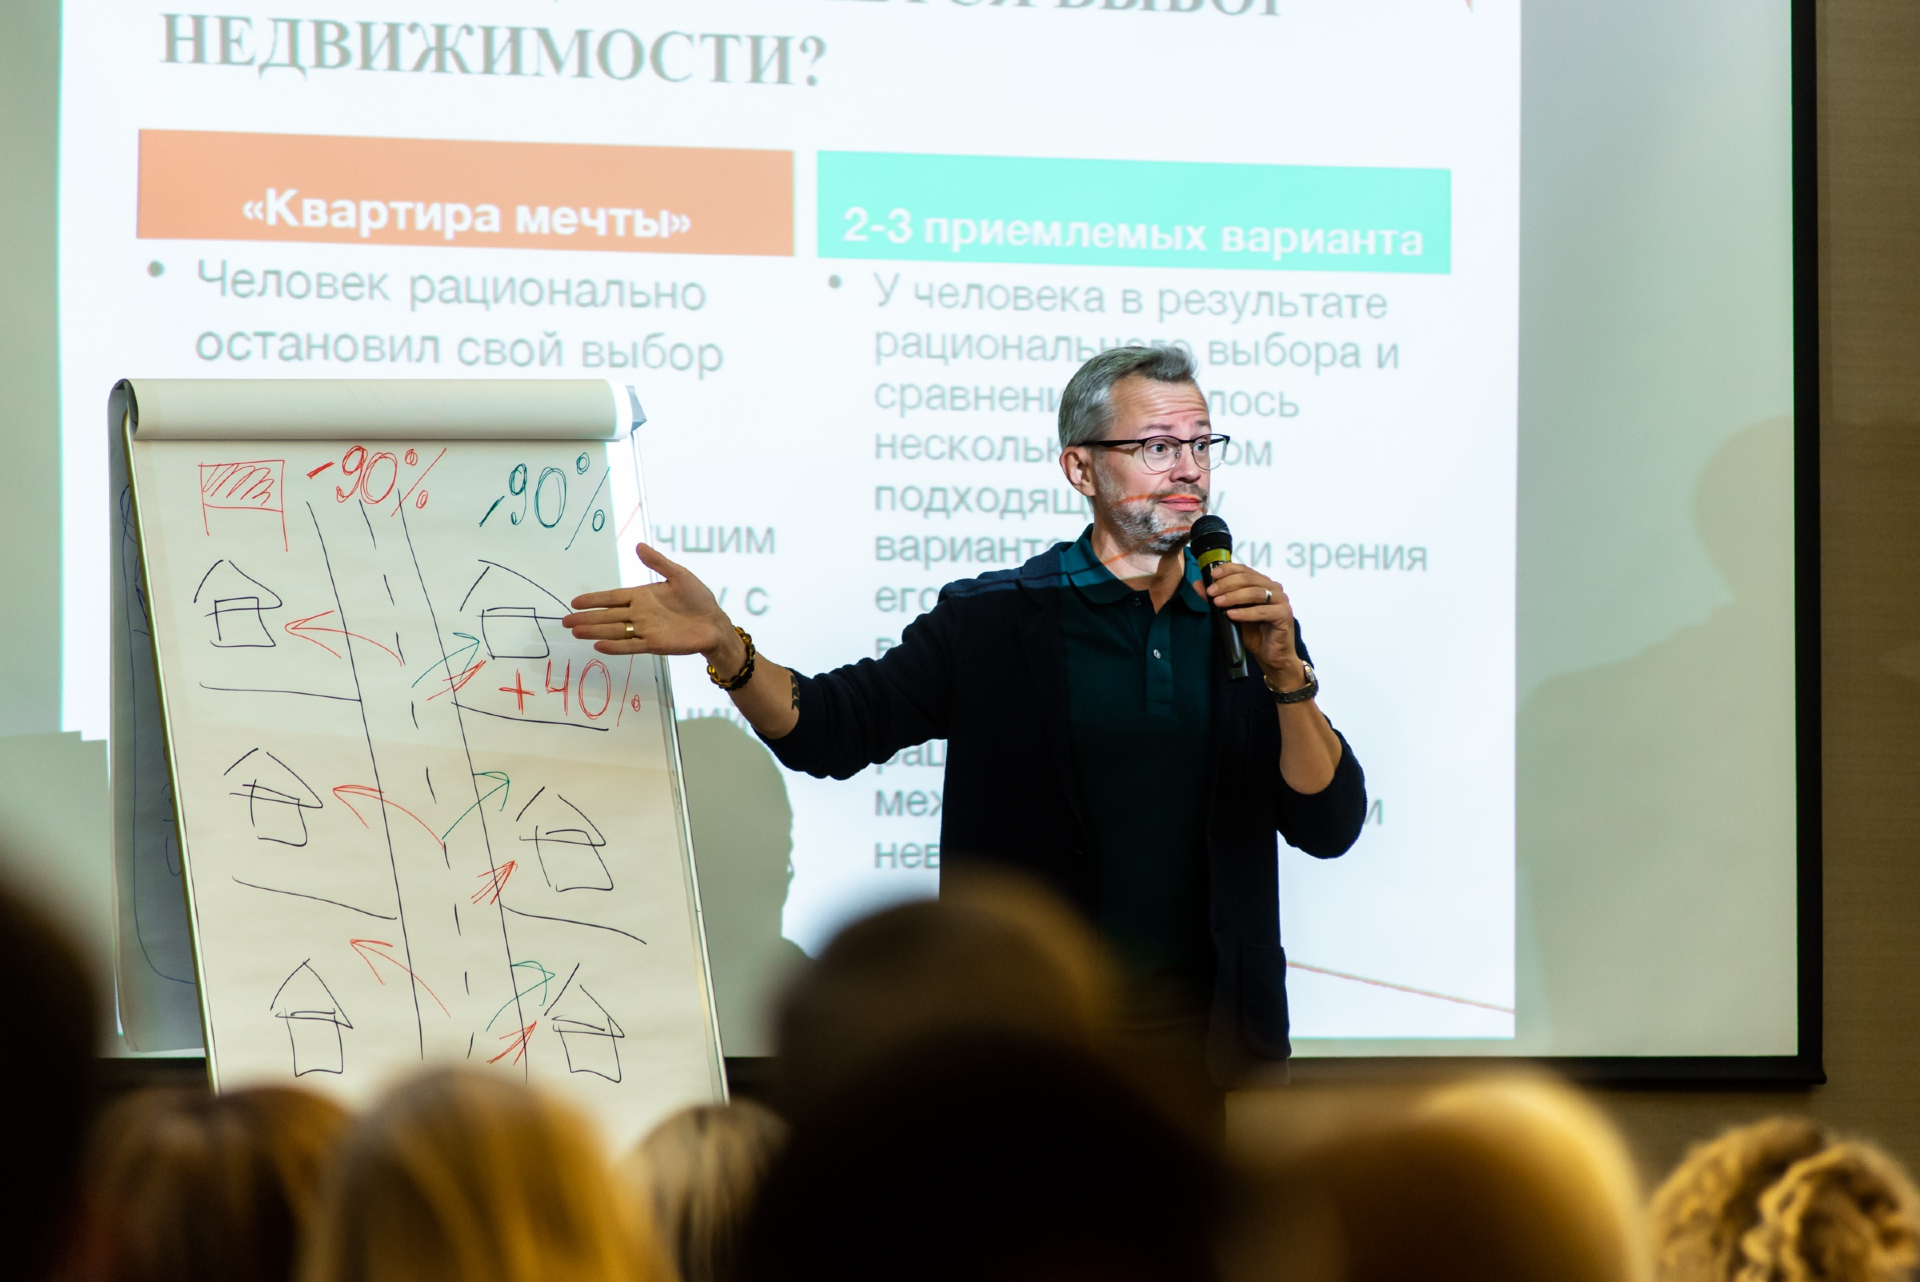 Как «Движение» стало важным событием для застройщиков в России